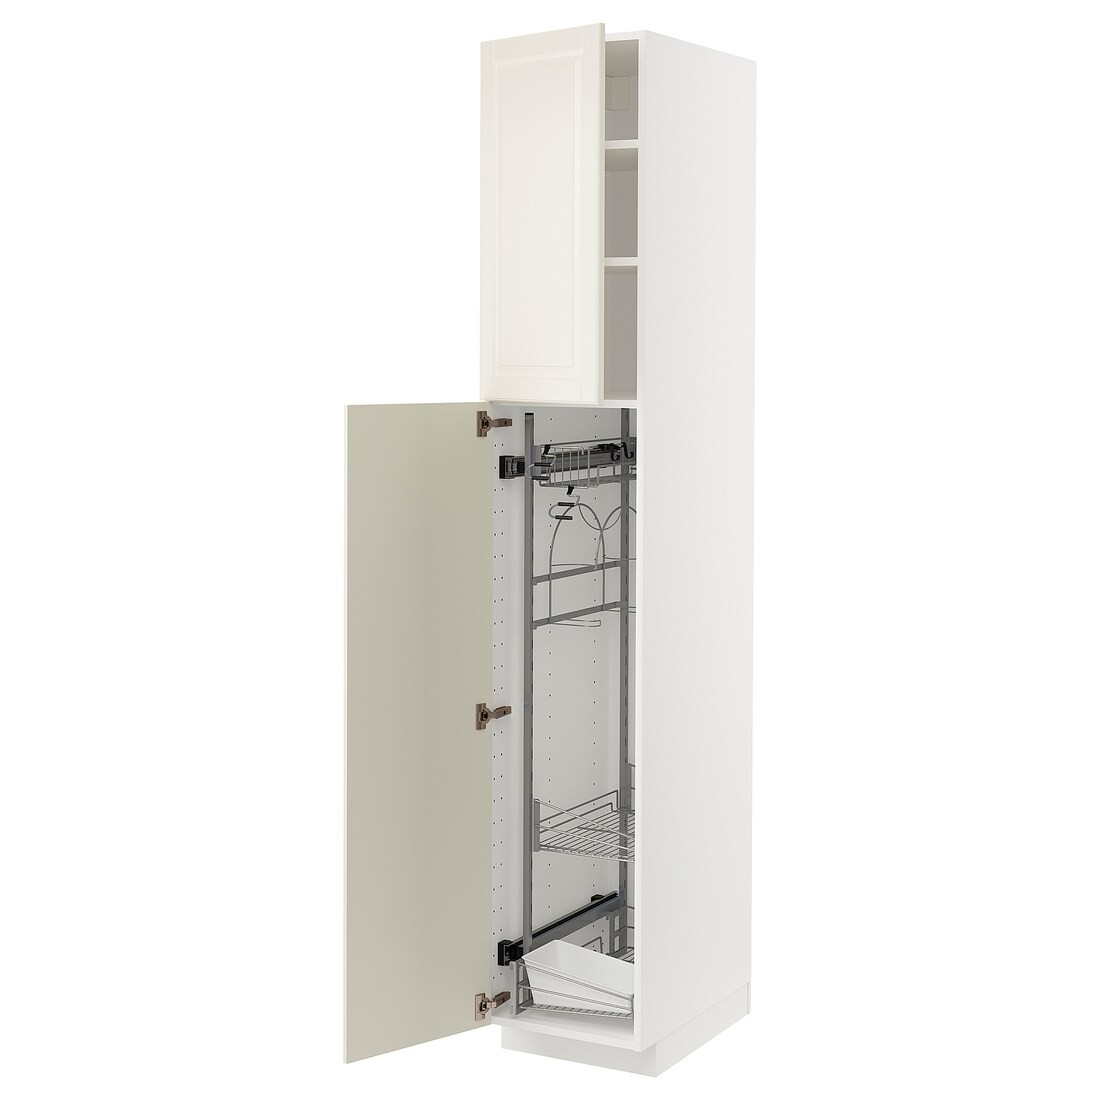 IKEA METOD МЕТОД Высокий шкаф с отделением для аксессуаров для уборки, белый / Bodbyn кремовый, 40x60x220 см 09454195 094.541.95